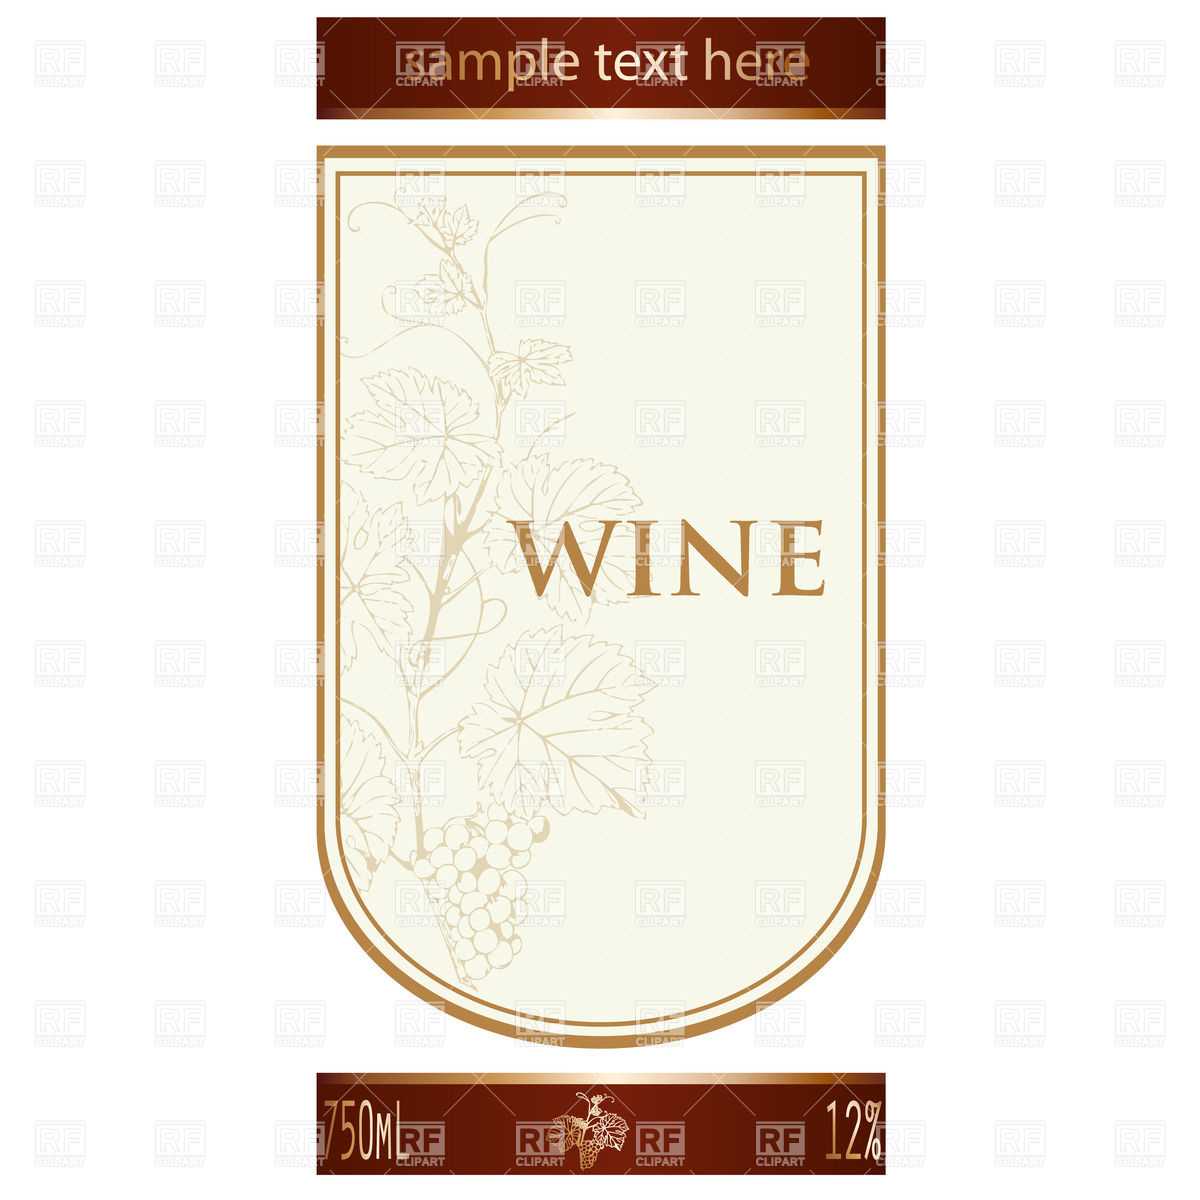 002 Template Ideas Free Wine Label Remarkable Bottle Regarding Blank Wine Label Template